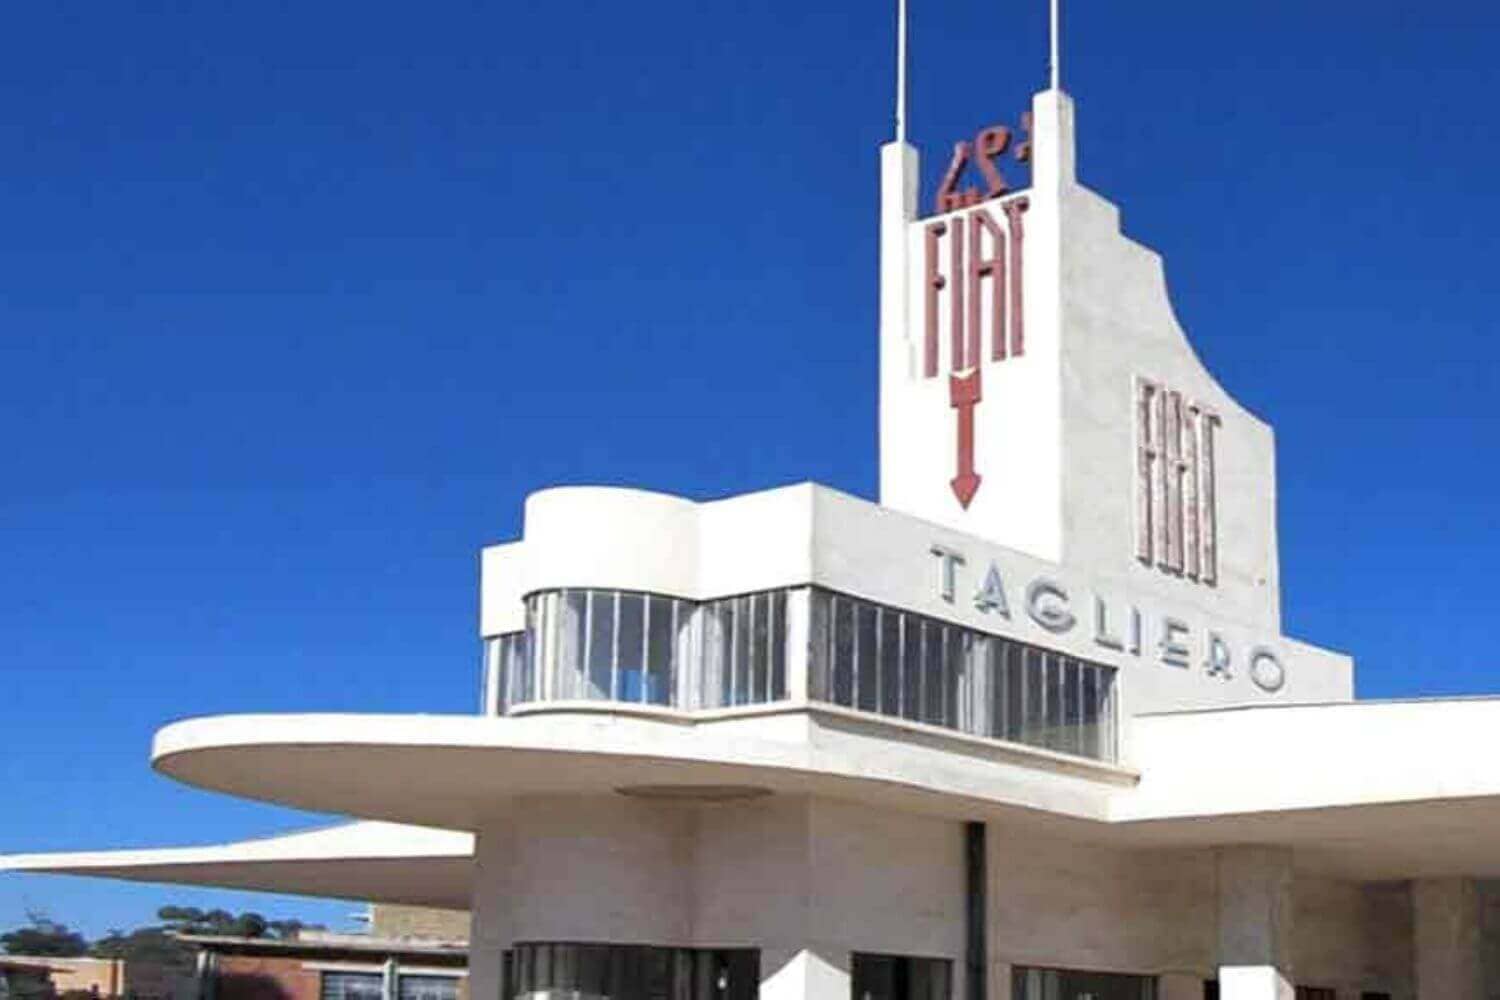 Fiat Tagliero Building in Asmara